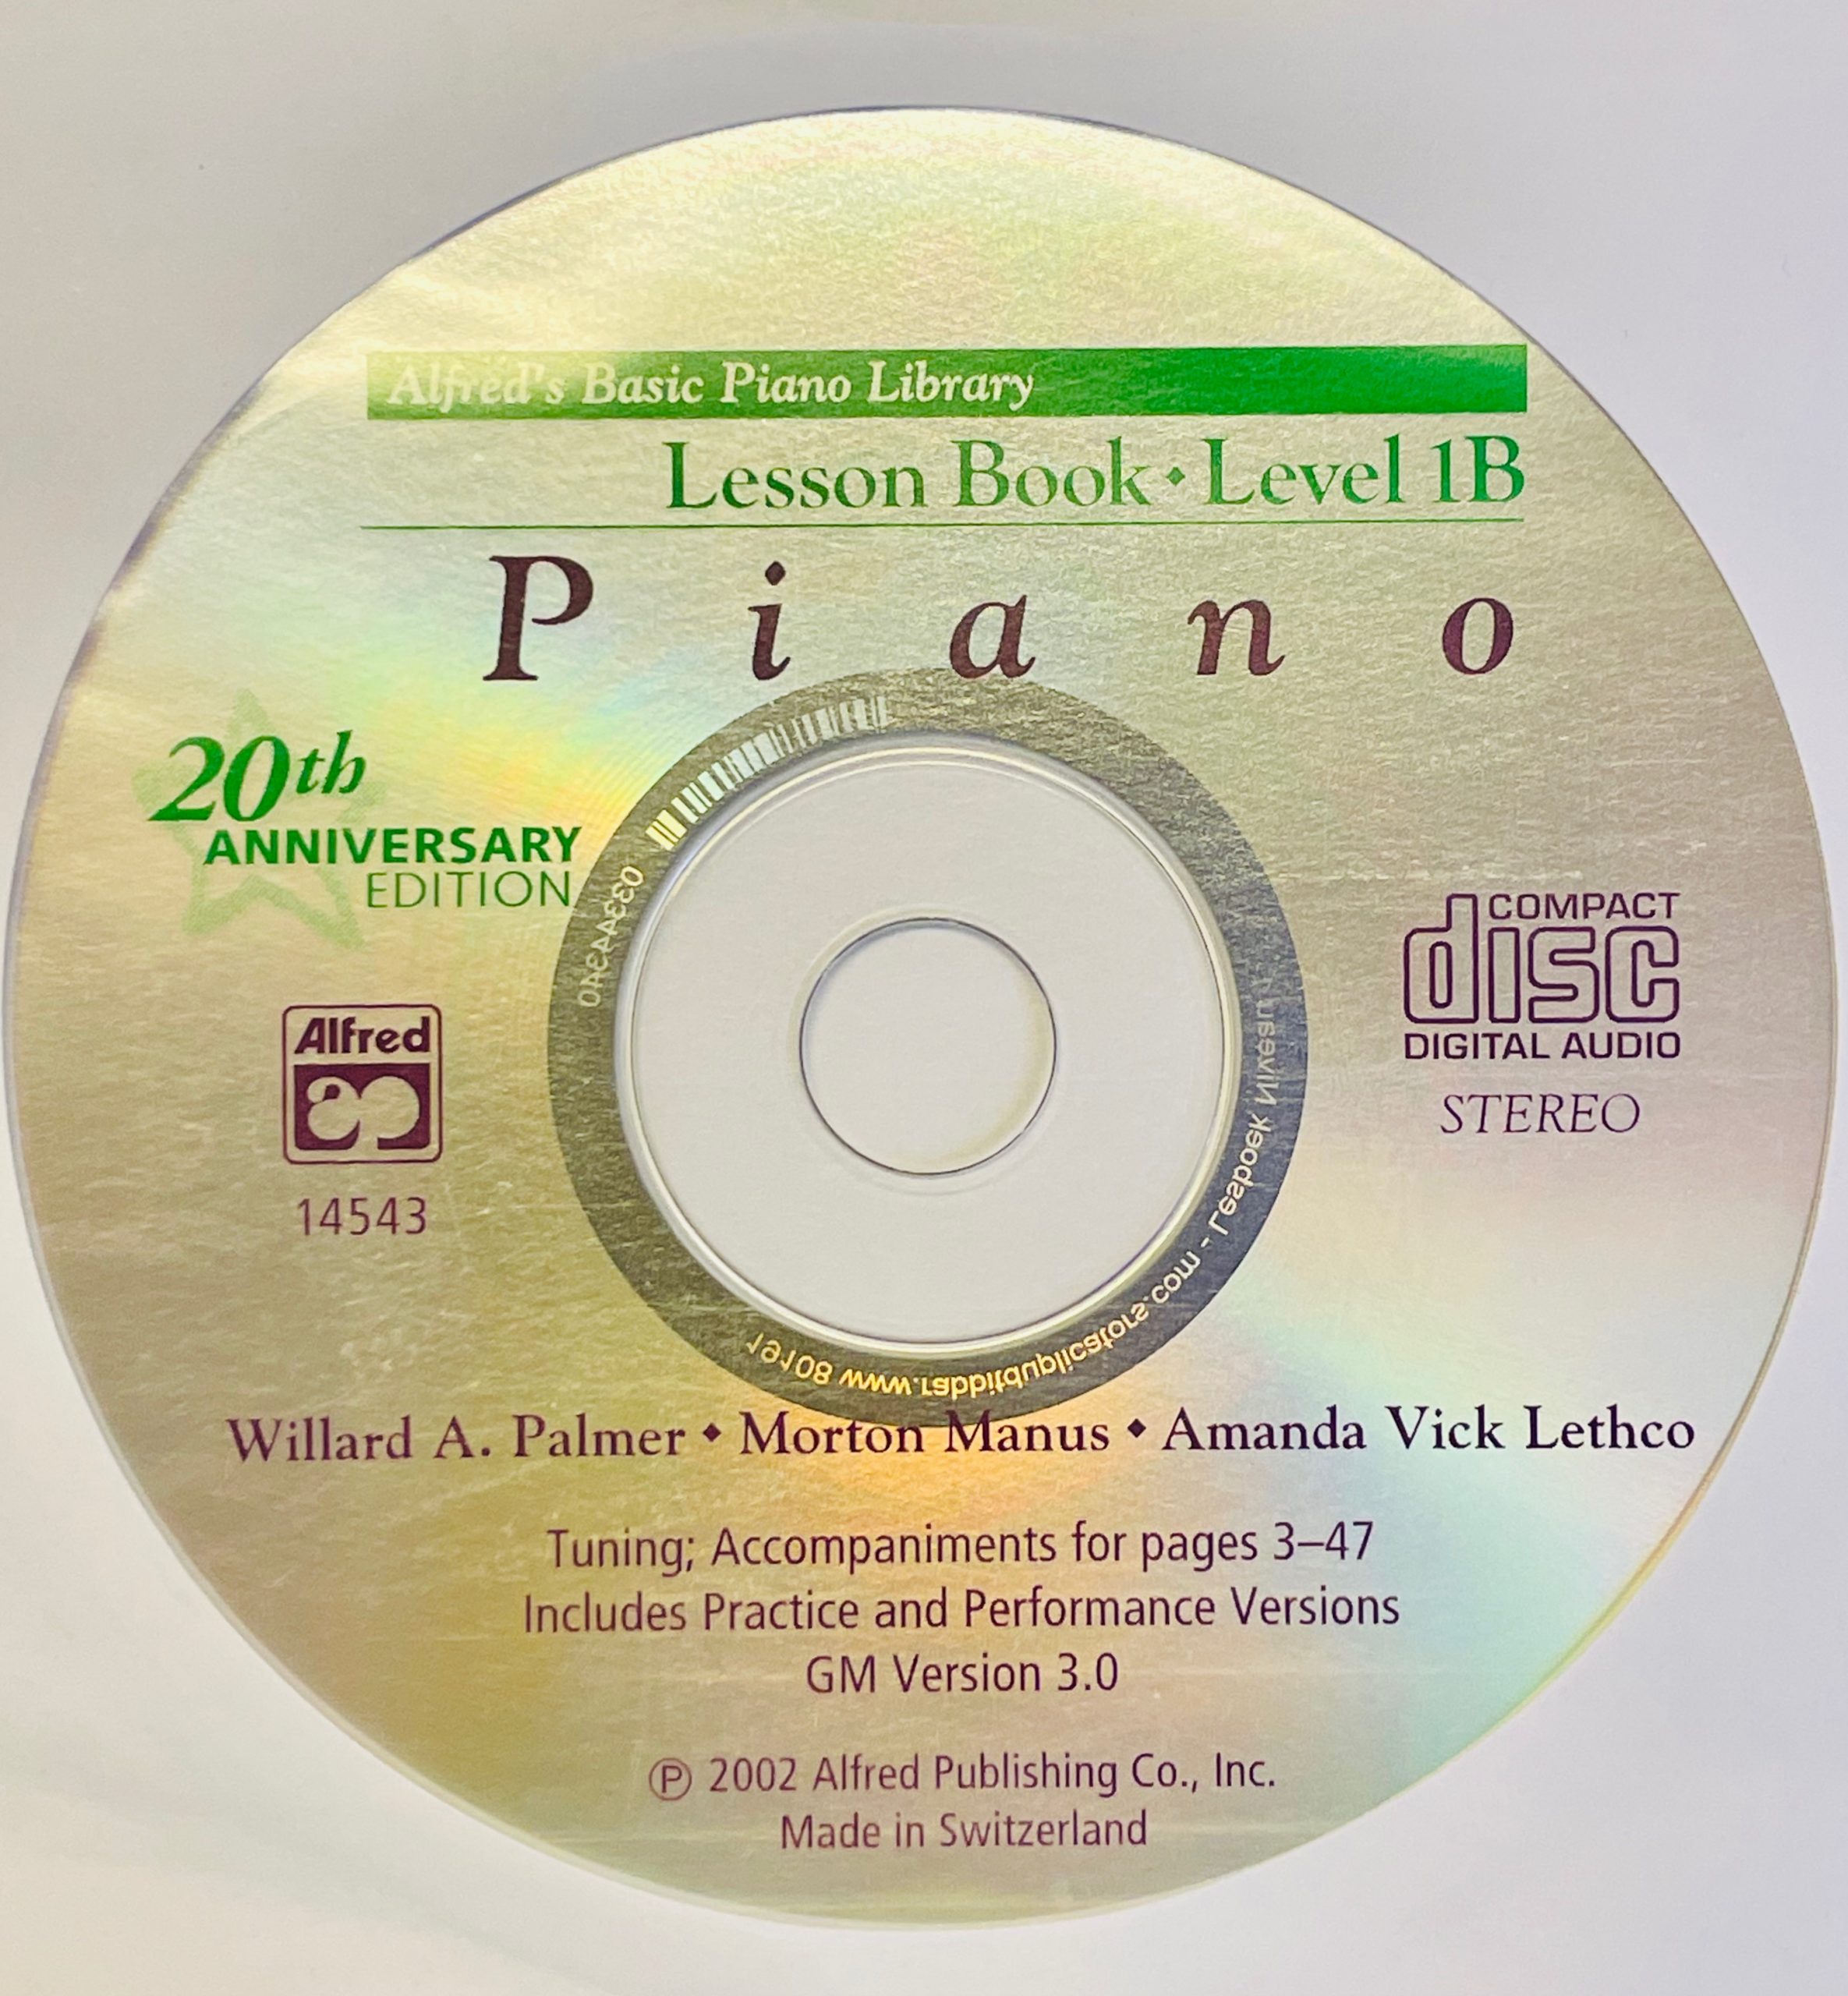 Piano libr. lesboek CD - Alfred Basic - Deel 1b